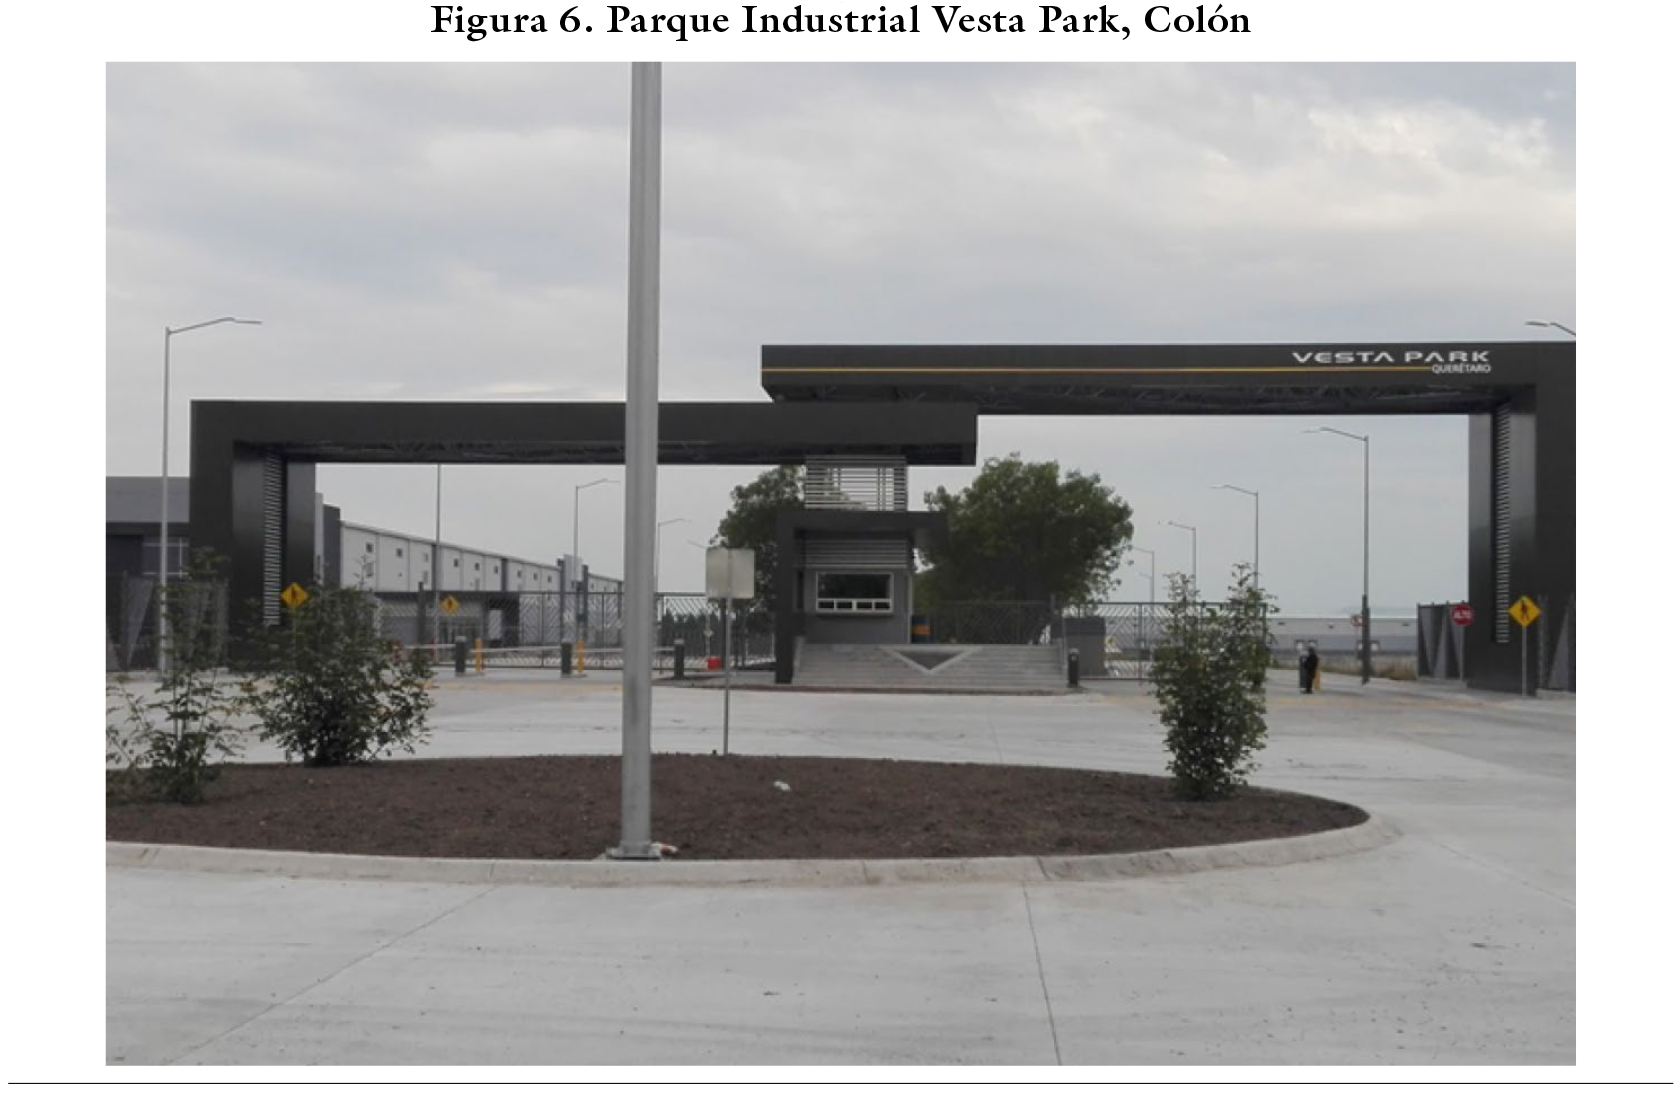 Parque Industrial Vesta Park, Colón